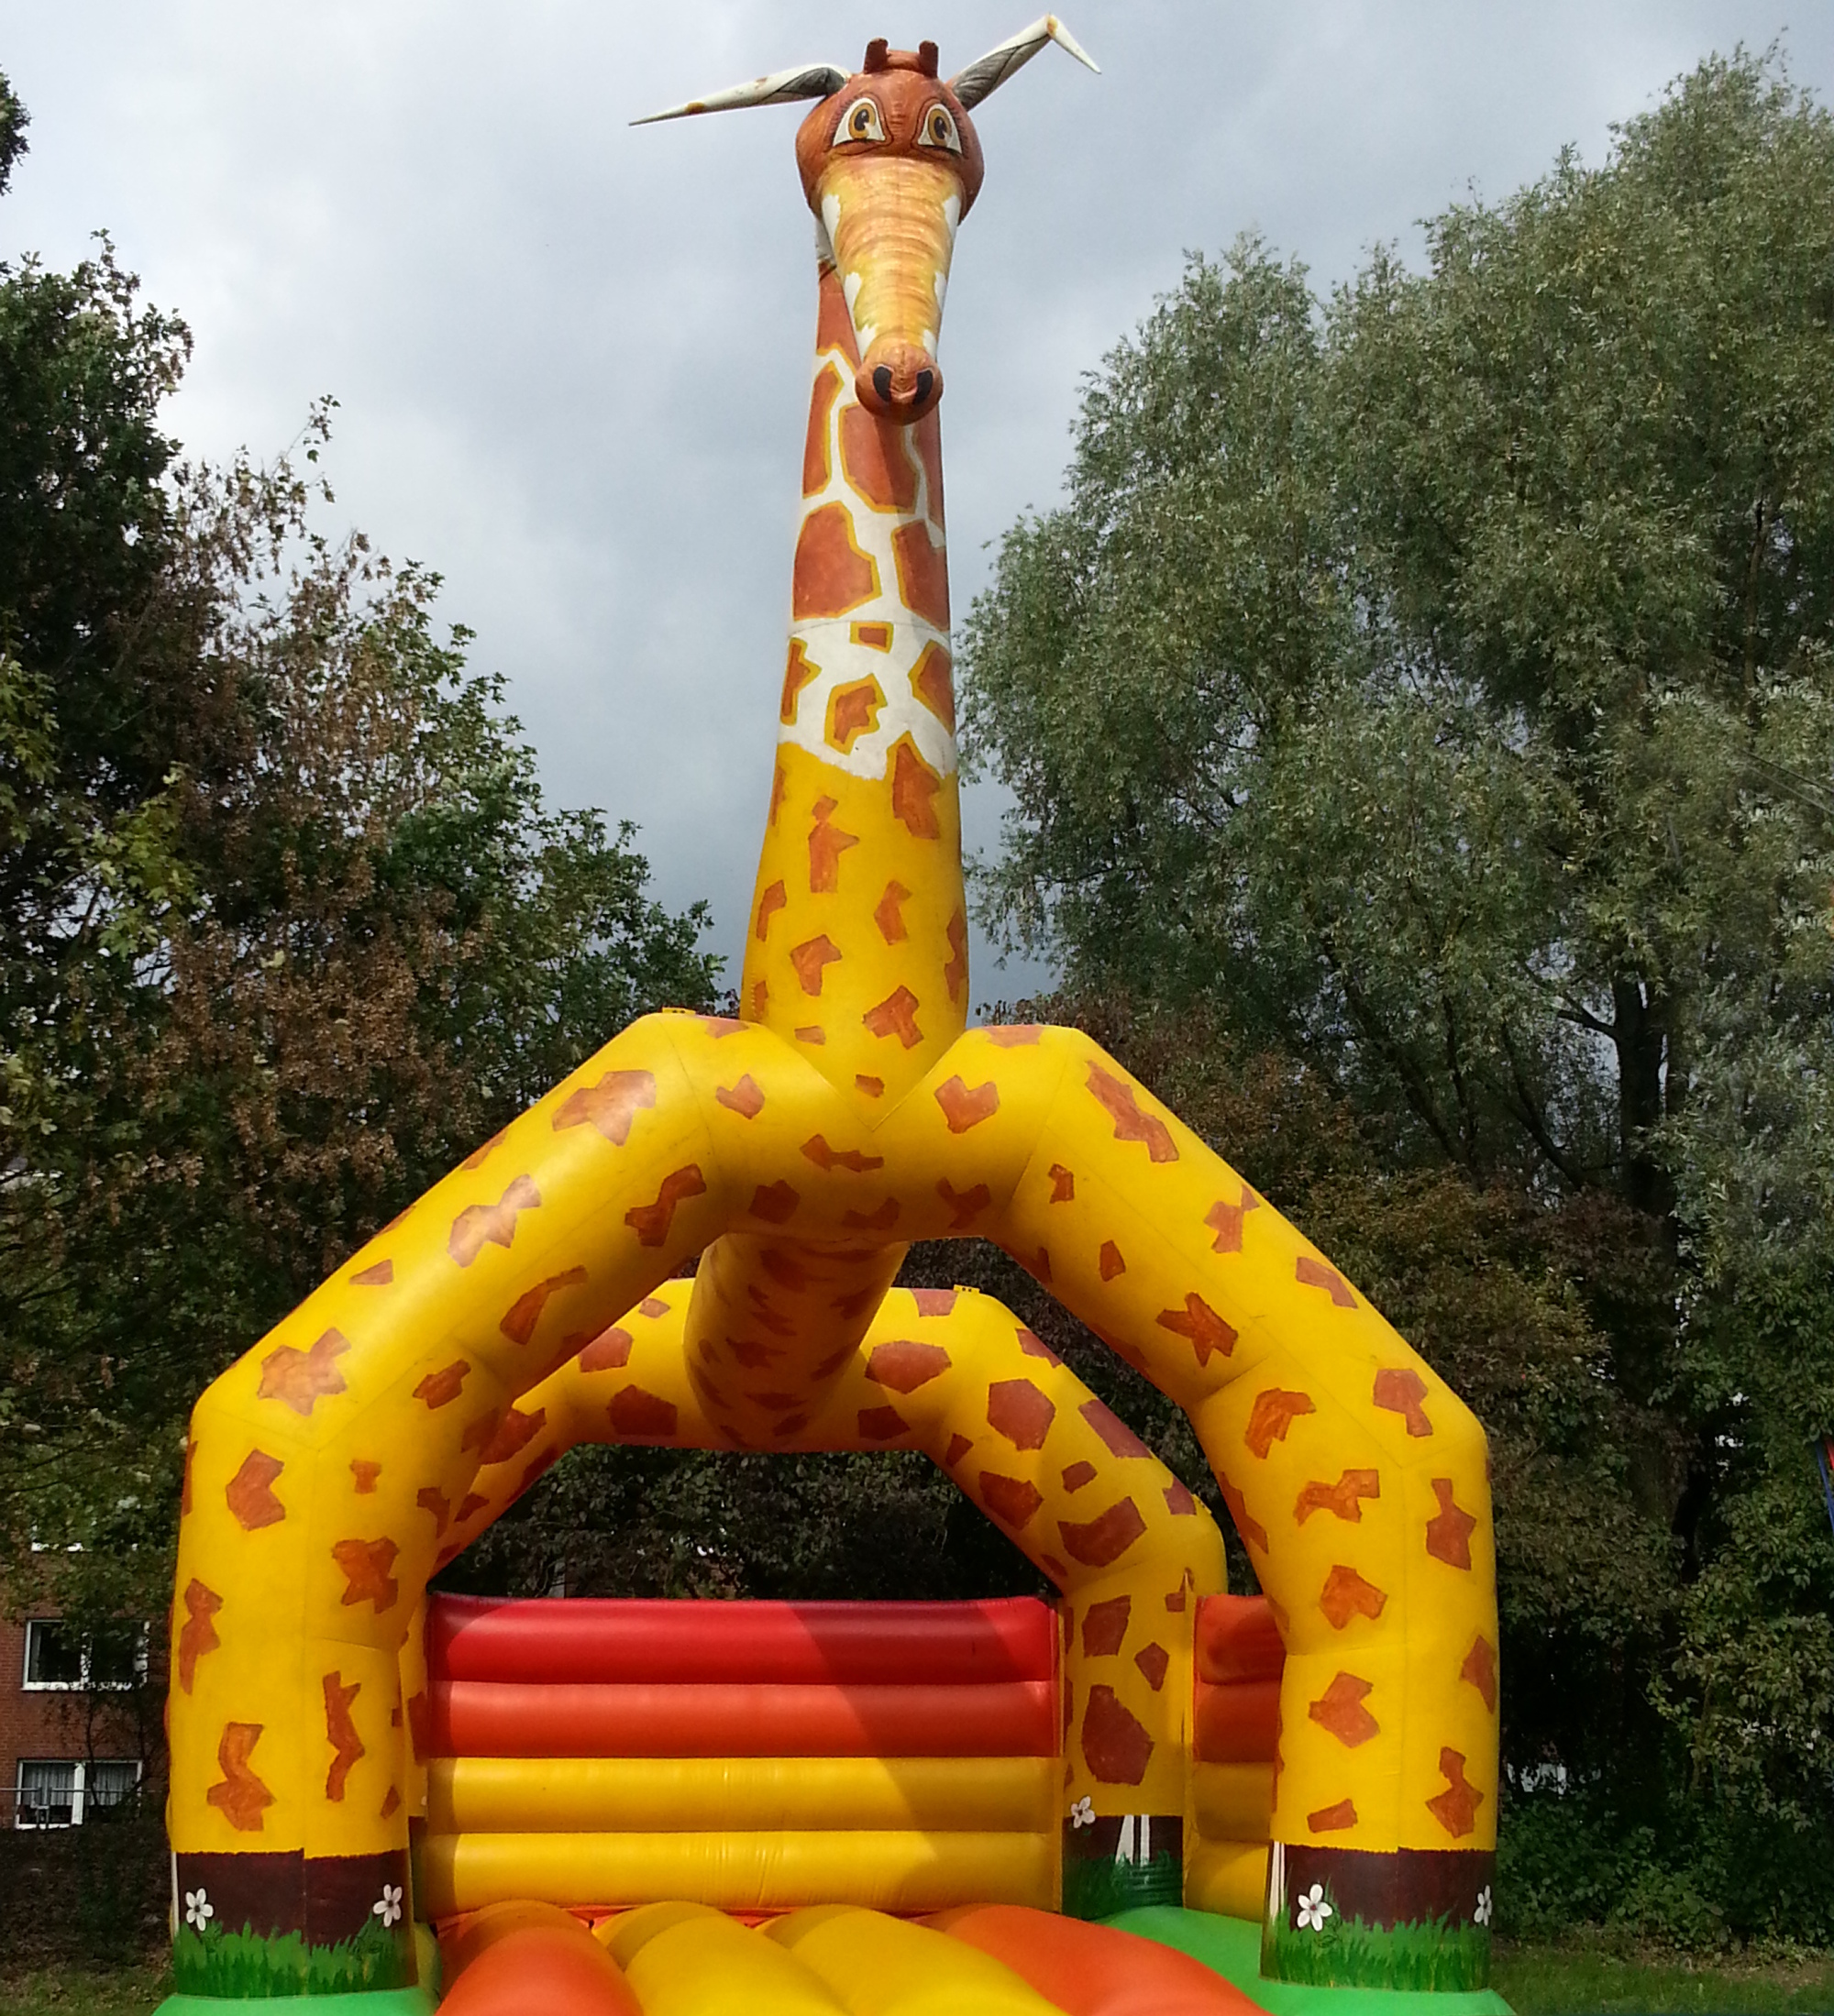 Hüpfburg - Barkhofen Giraffe